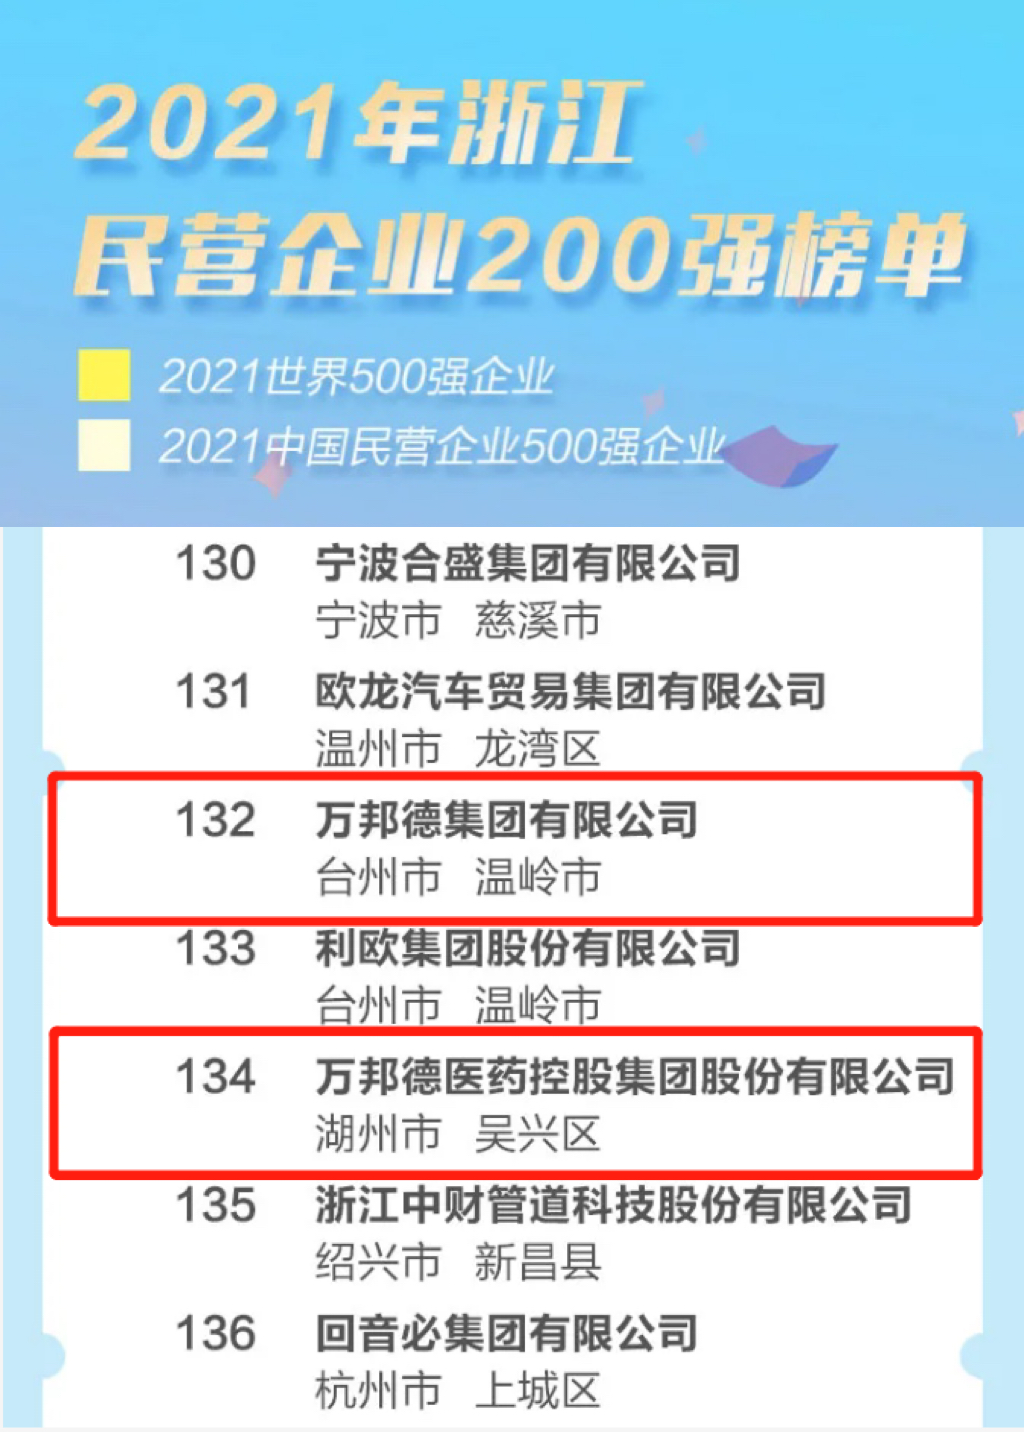 榮譽 | 萬邦德集團榮譽上榜2021浙江民營企業200強